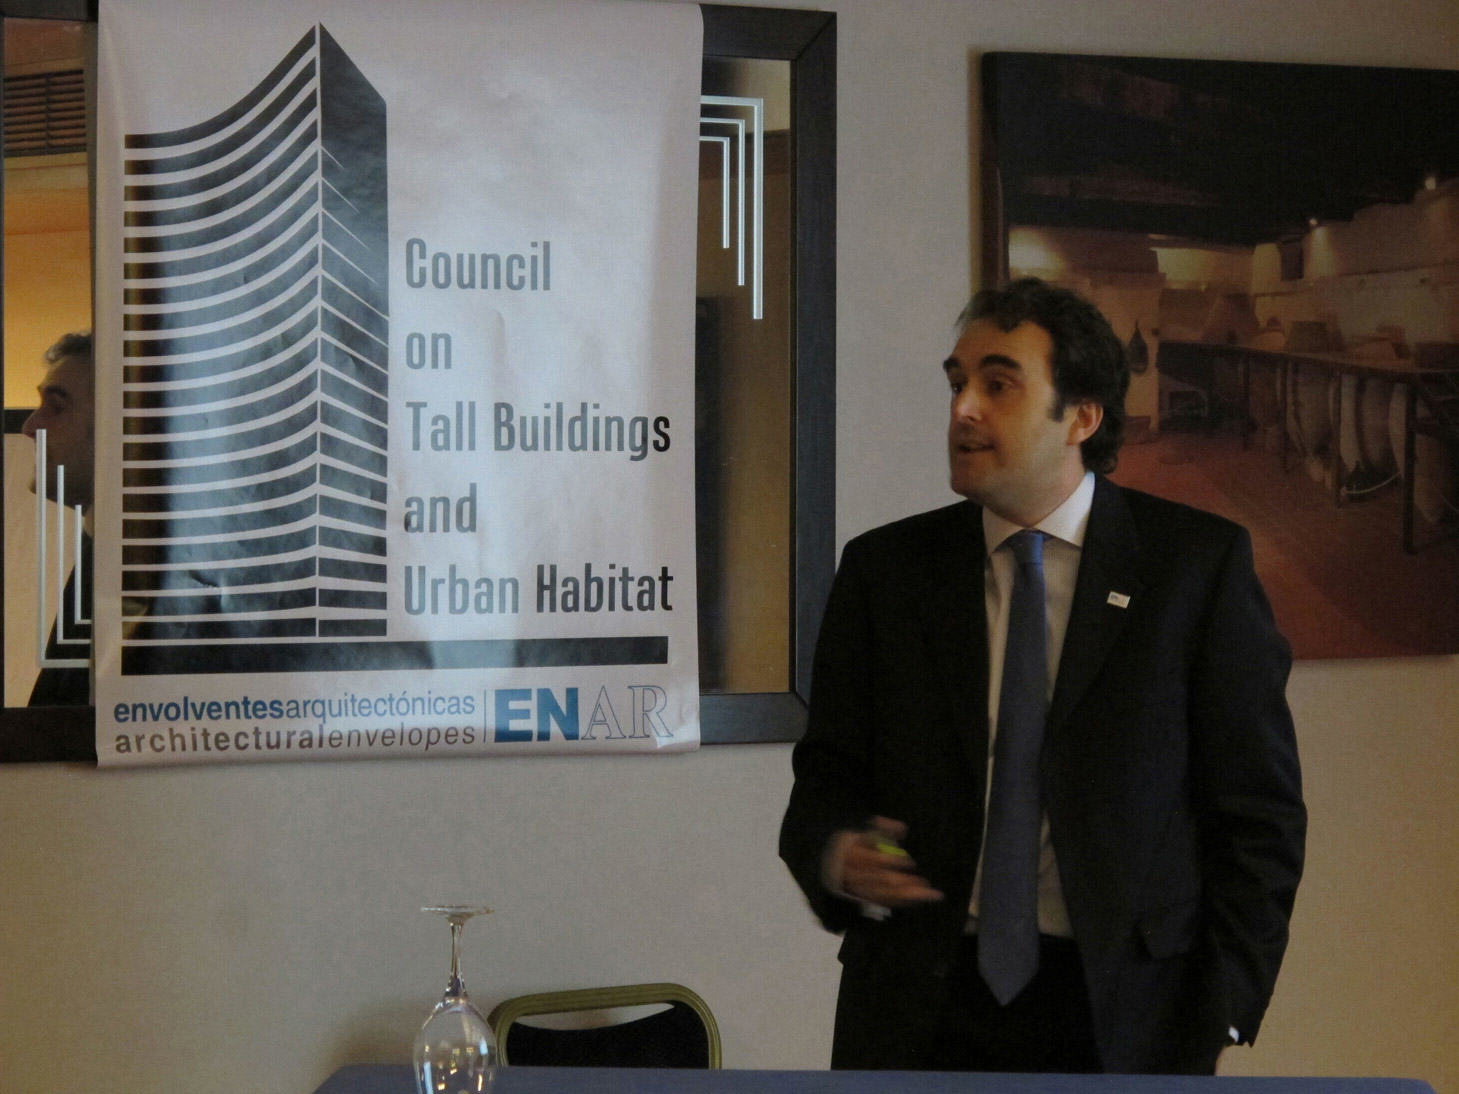 ENAR Envolventes Arquitectónicas y CTBUH España “Oportunidad de utilización de nuevos materiales en las fachadas de los edificios en altura”.